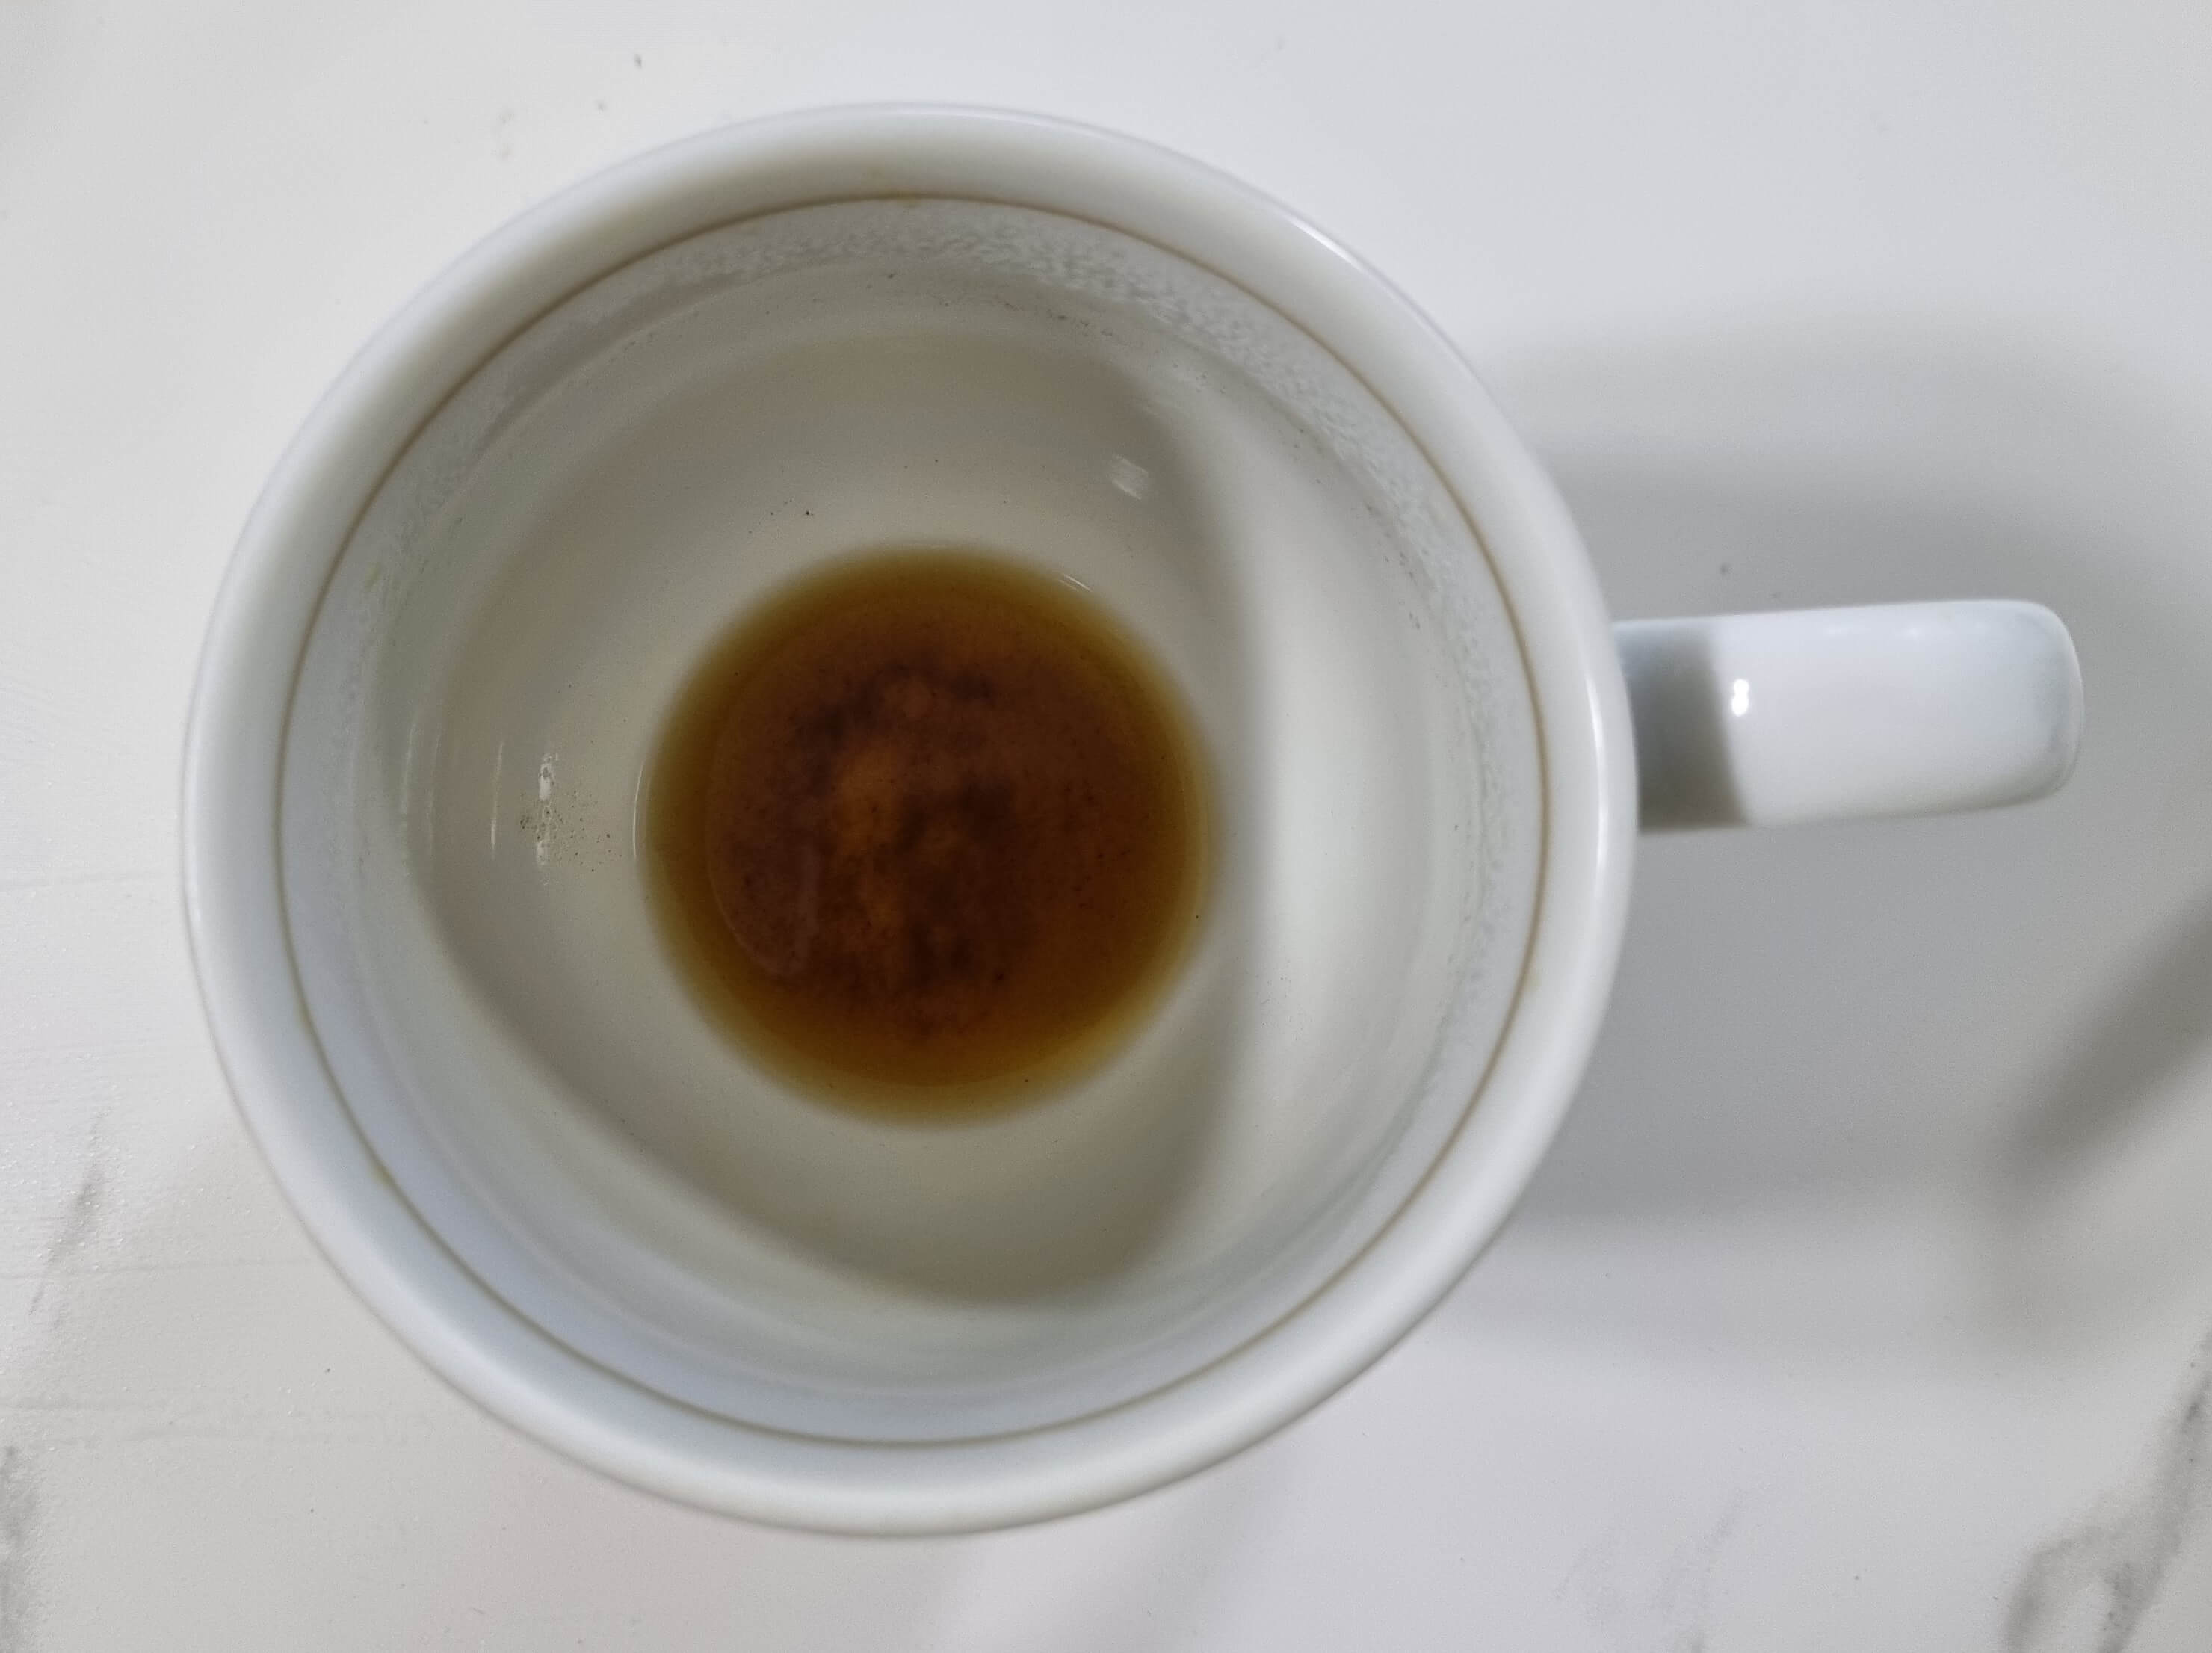 에스프레소 머신에서 추출한 커피를 마신 후&#44; 남아 있는 미분이 있는 사진입니다.